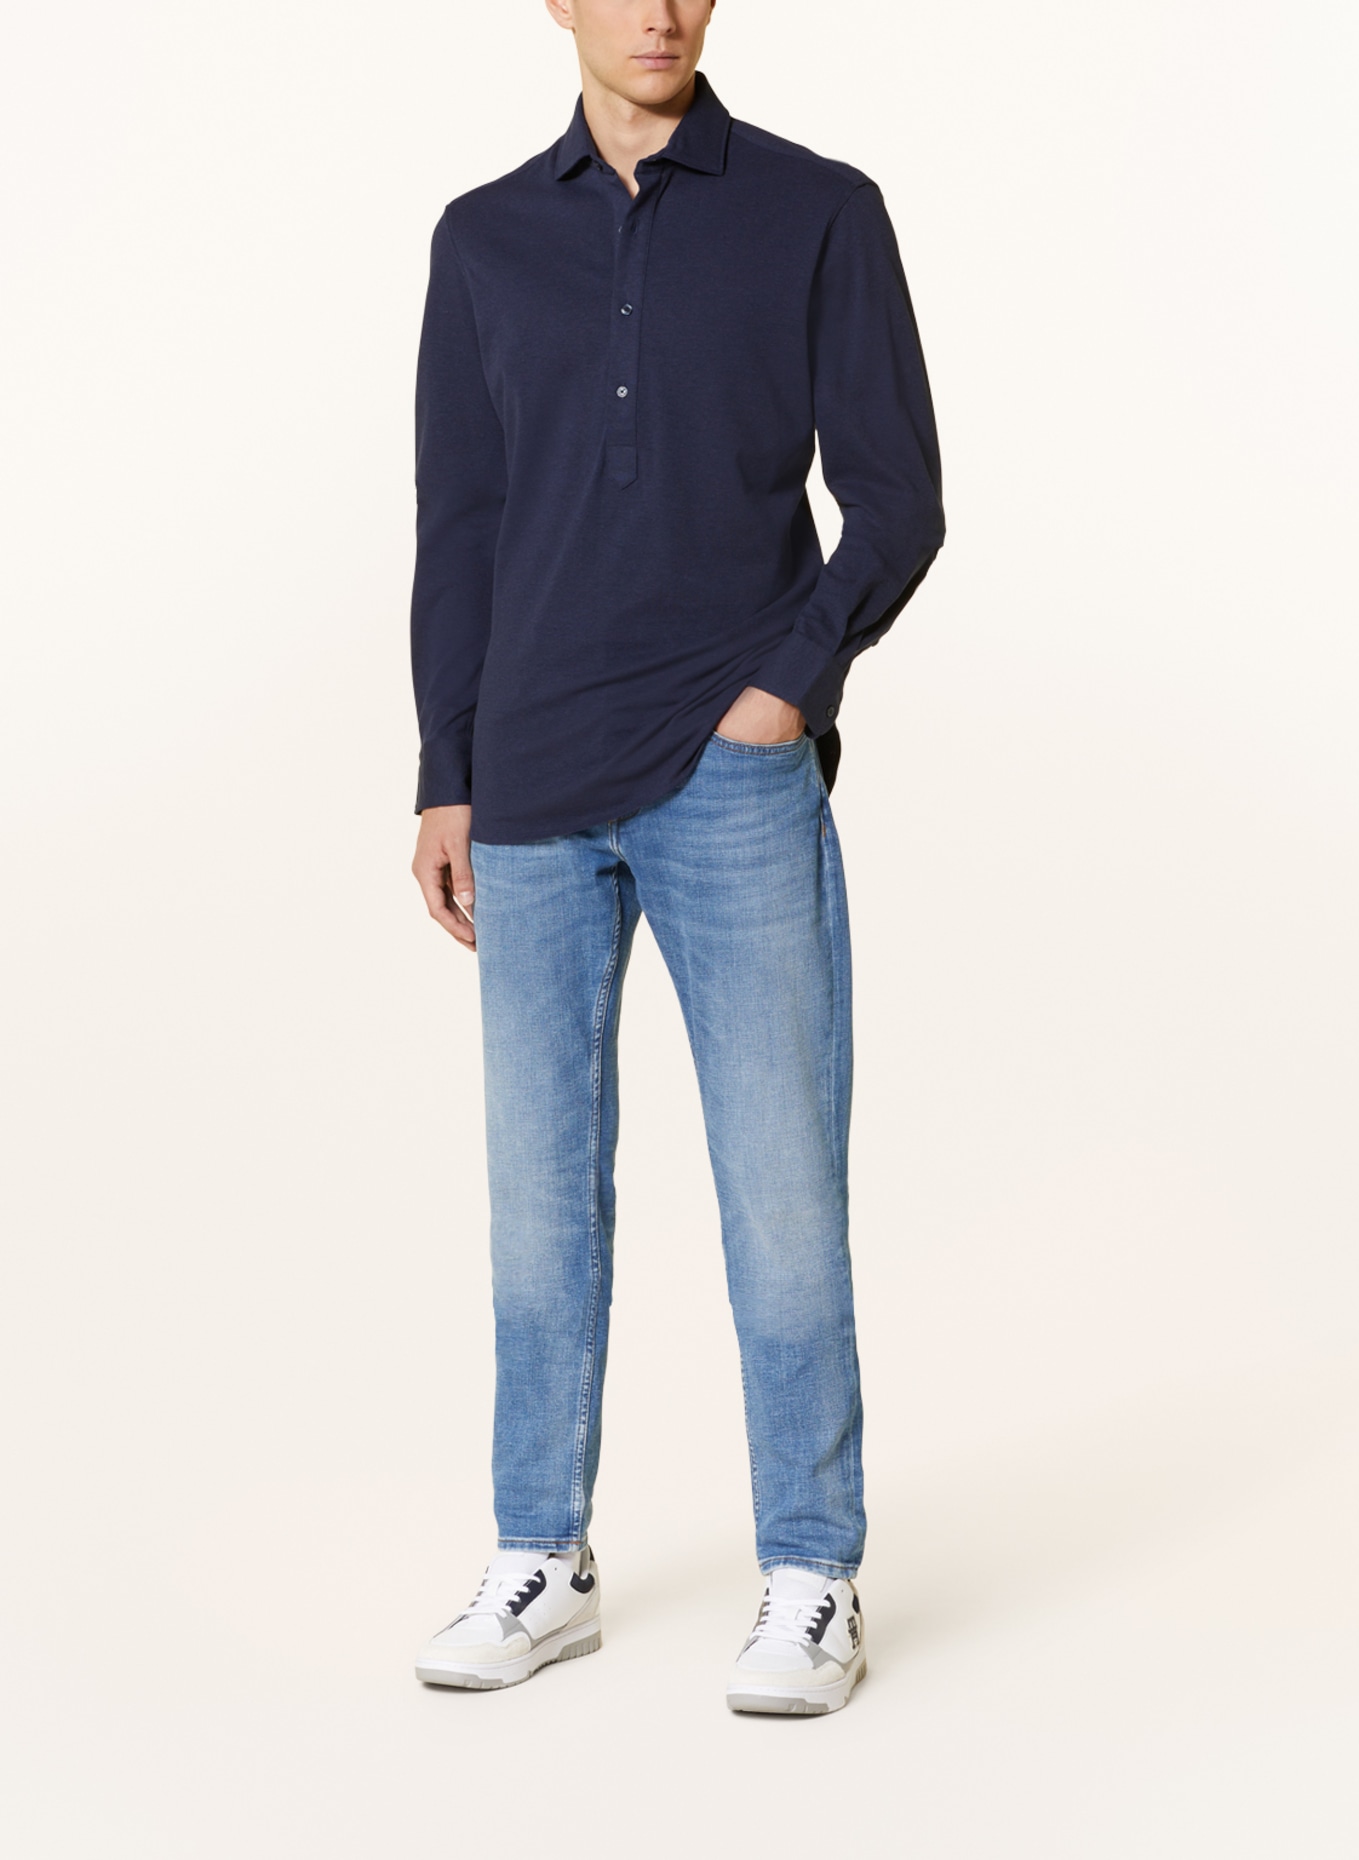 TOMMY HILFIGER Piqué shirt regular fit, Color: DARK BLUE (Image 2)